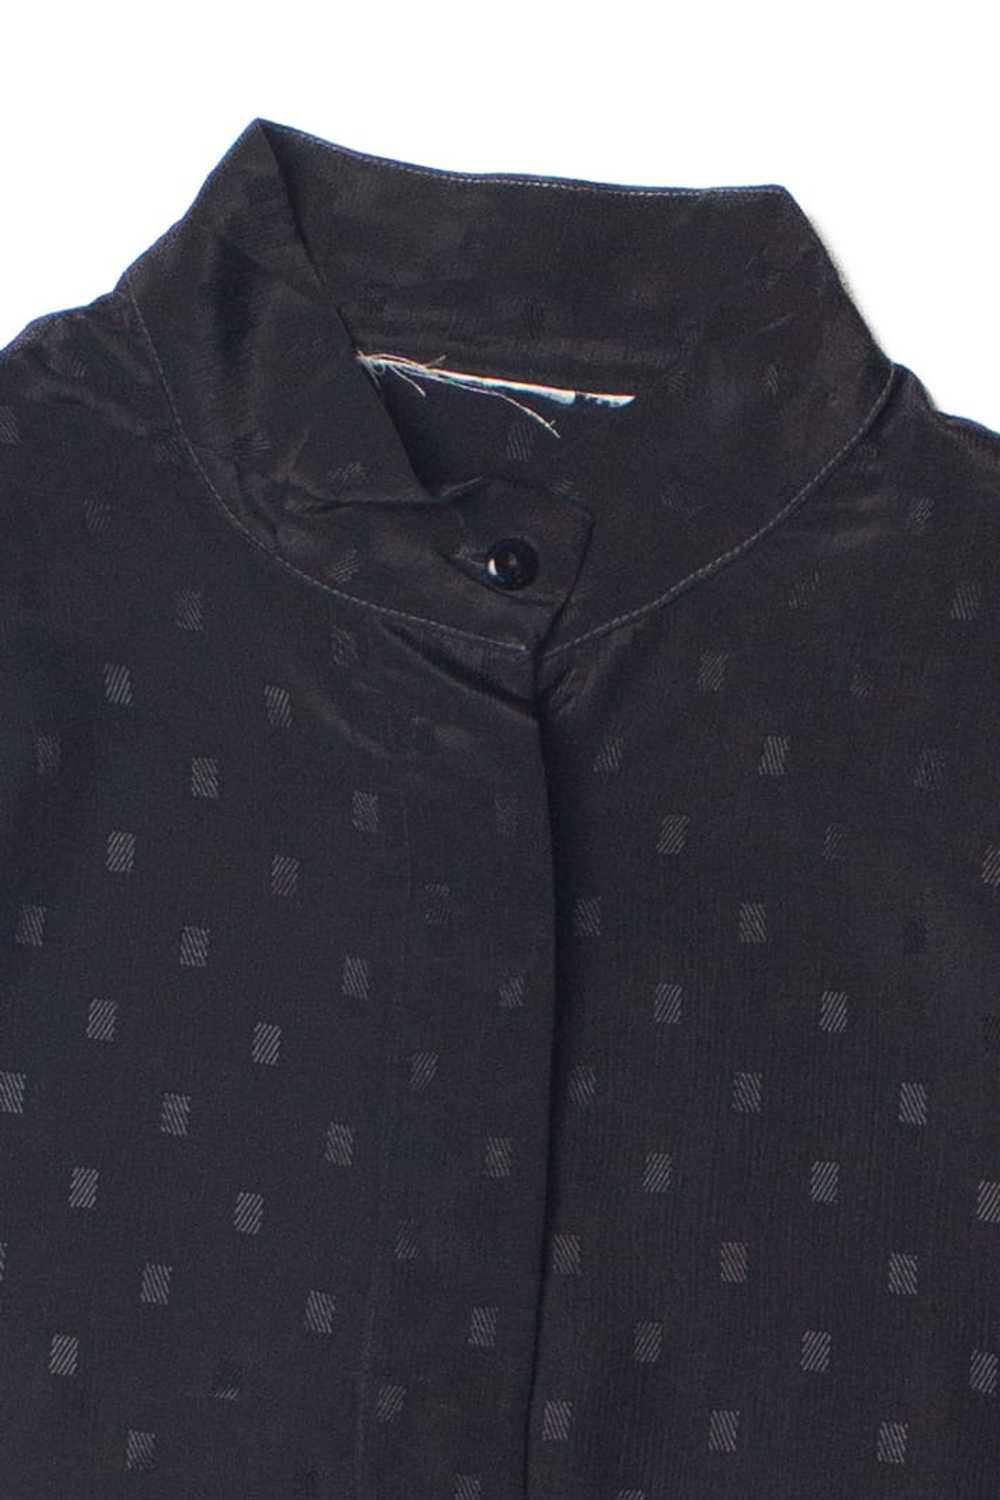 Vintage Lightweight Black Patterned Button Up Top - image 2